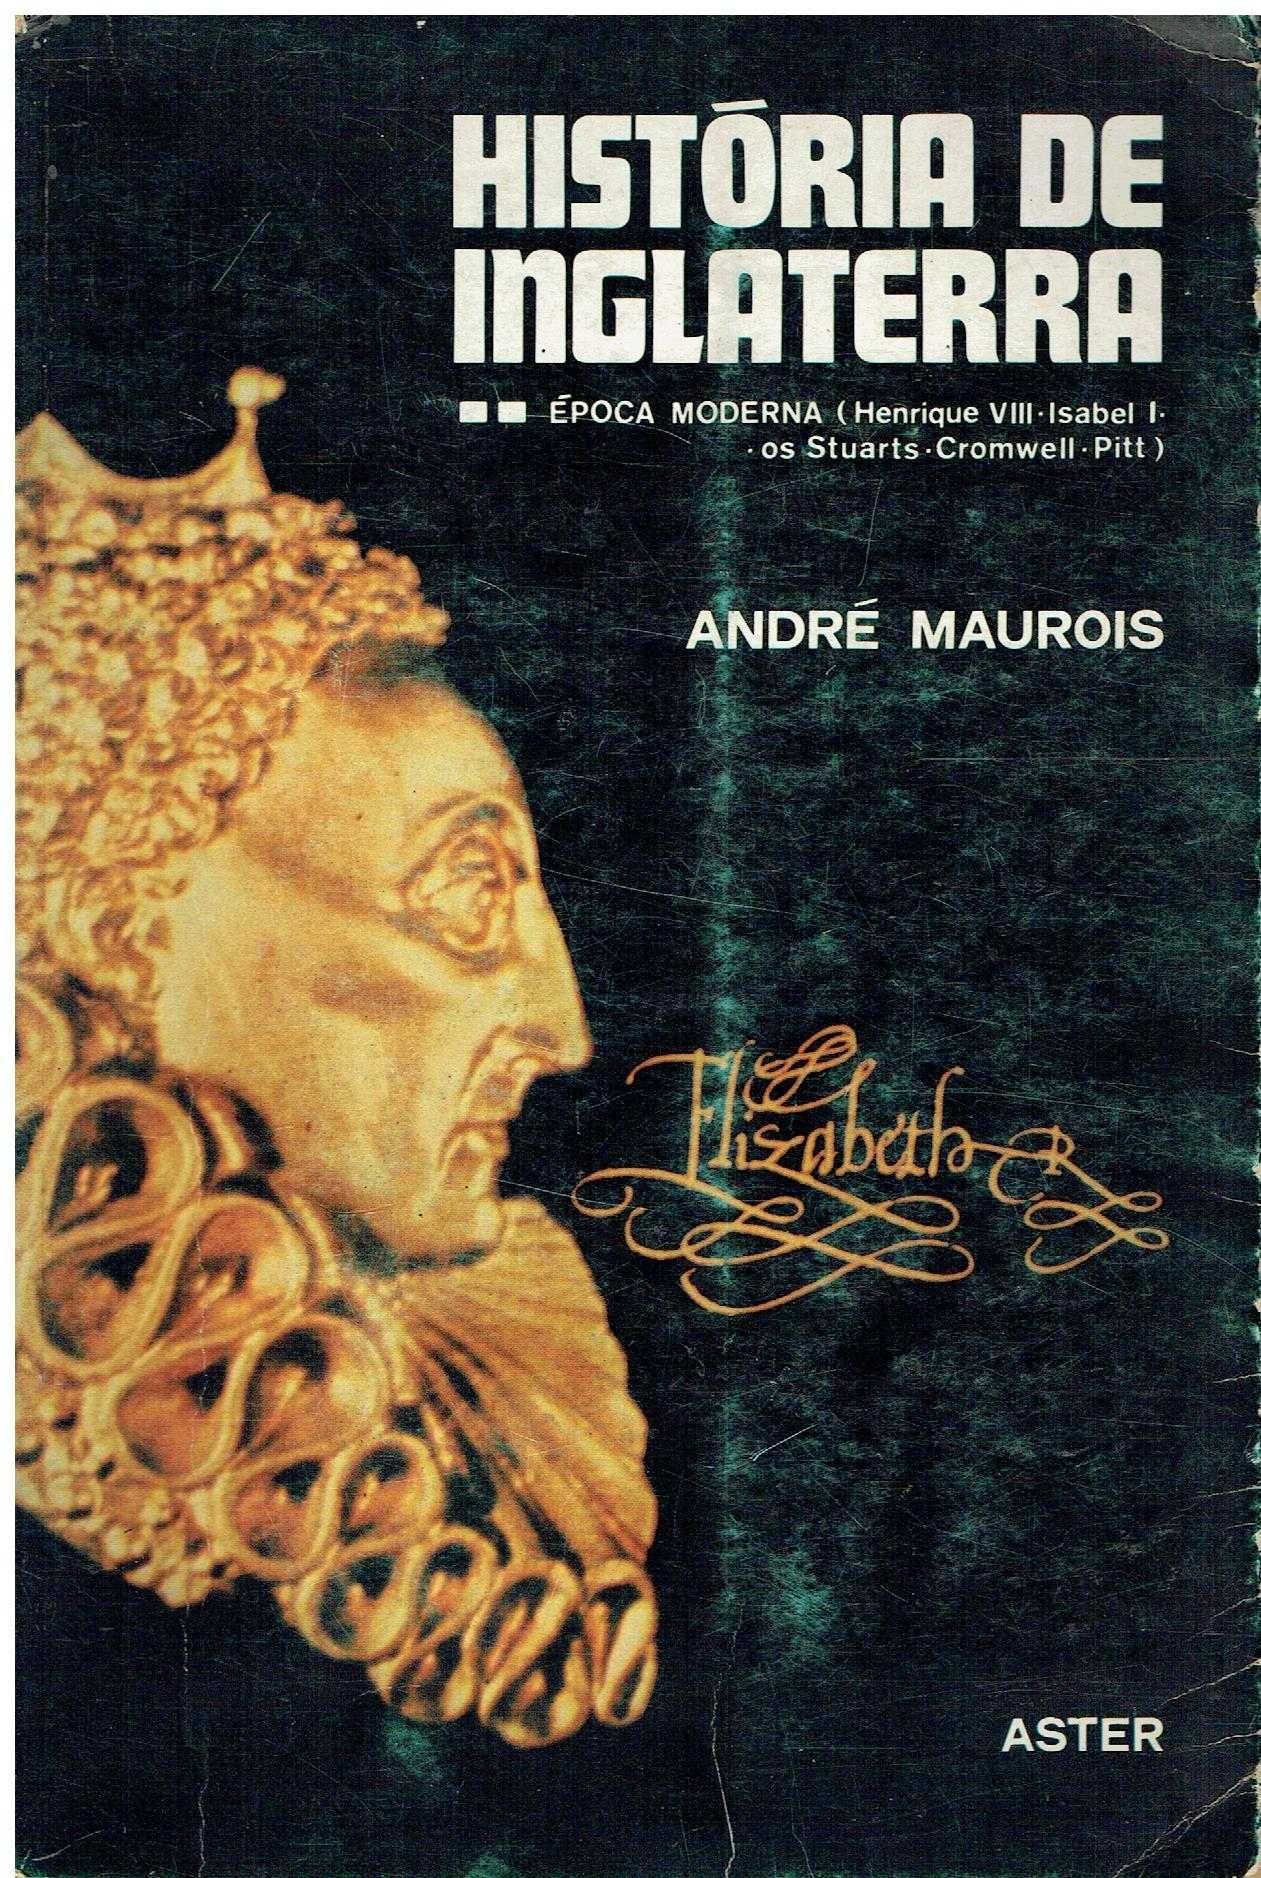 5250
	
História de Inglaterra 
Época Moderna
André Maurois